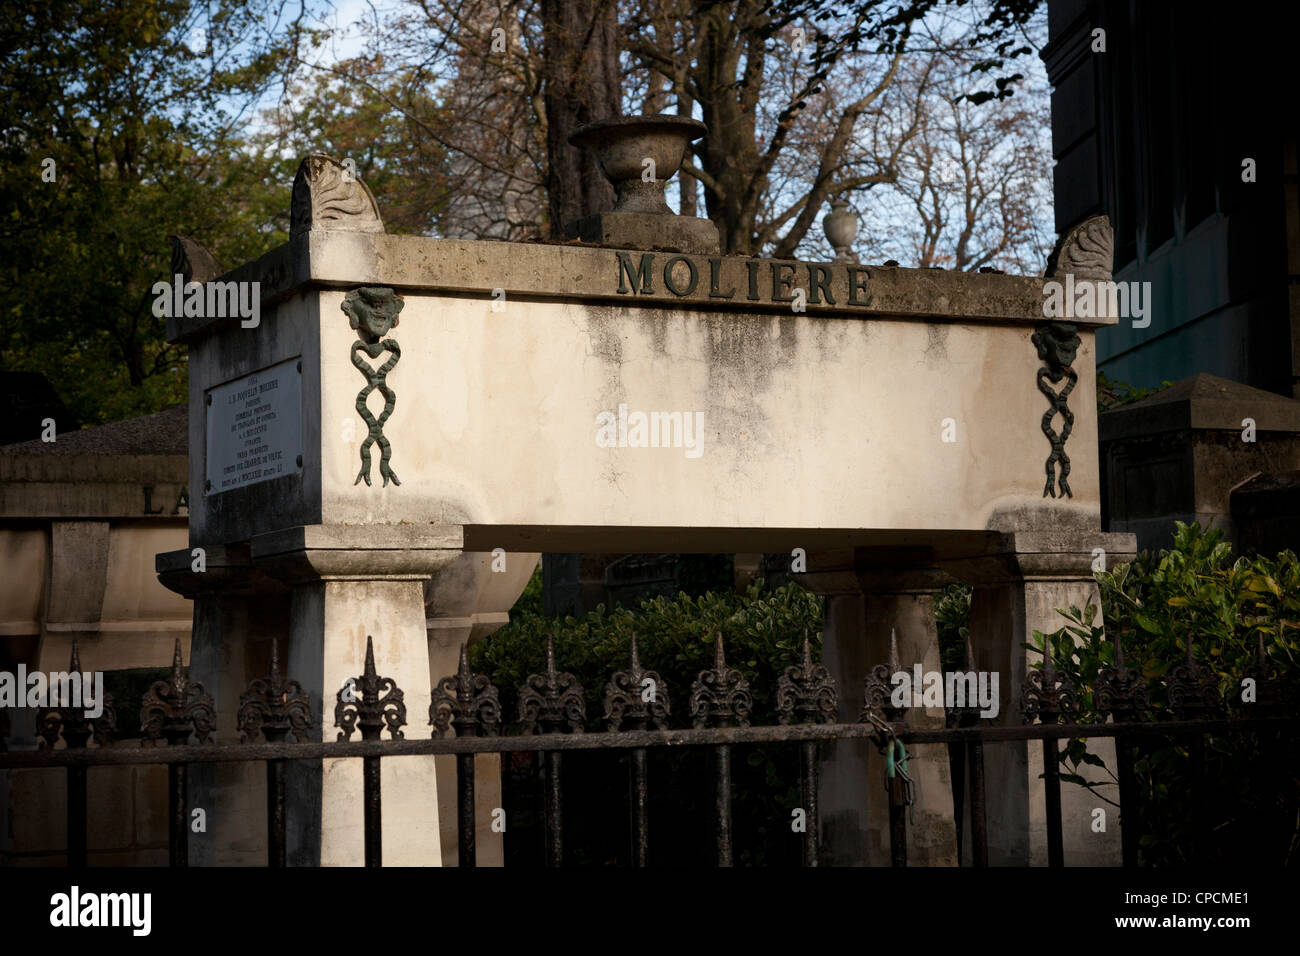 La tombe de Molière au cimetière du Père-Lachaise. Paris, France. Banque D'Images